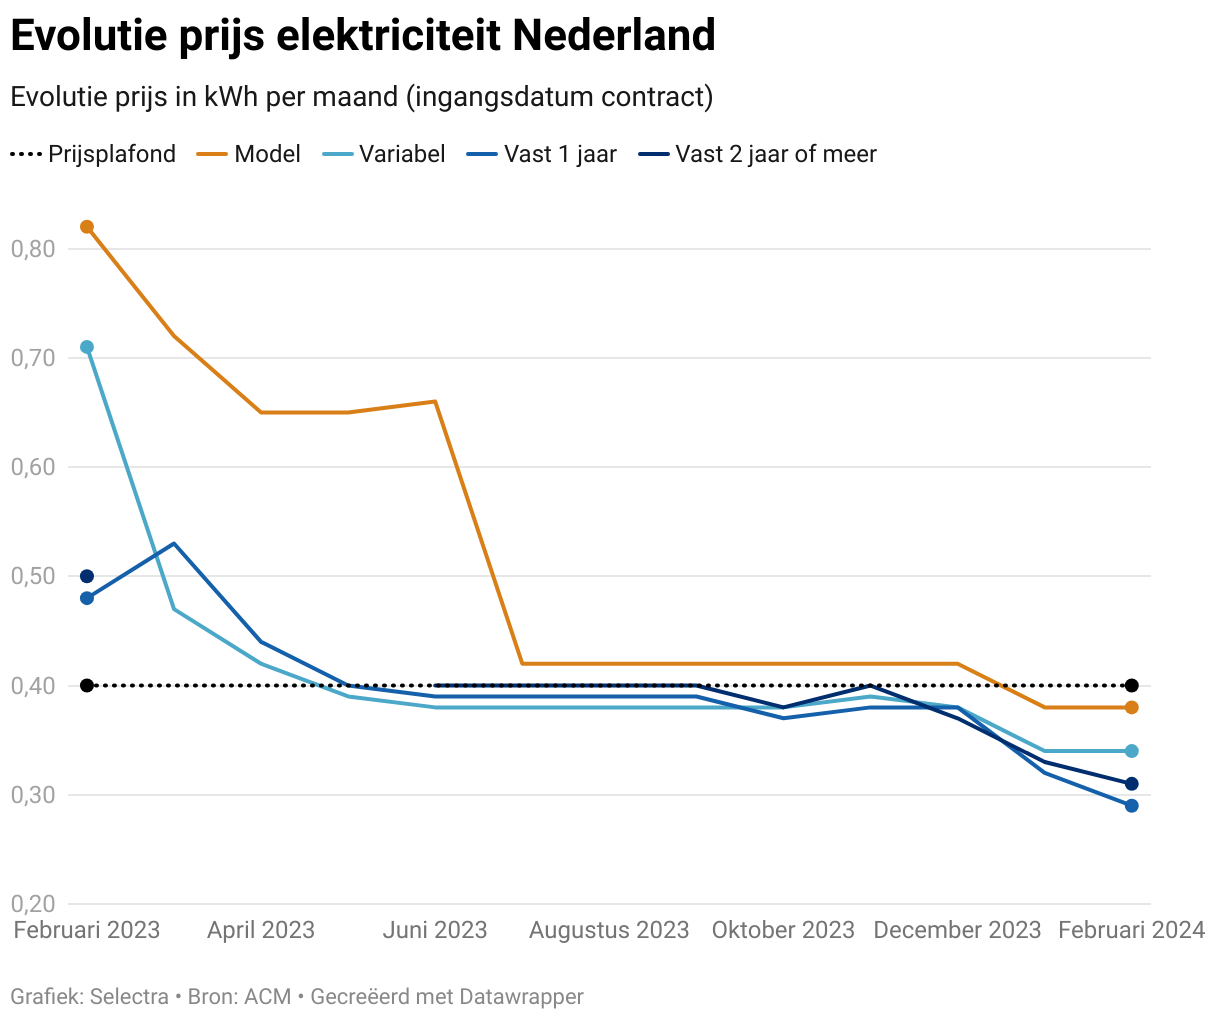 Grafiek met de prijsevolutie van elektriciteitscontracten in Nederland